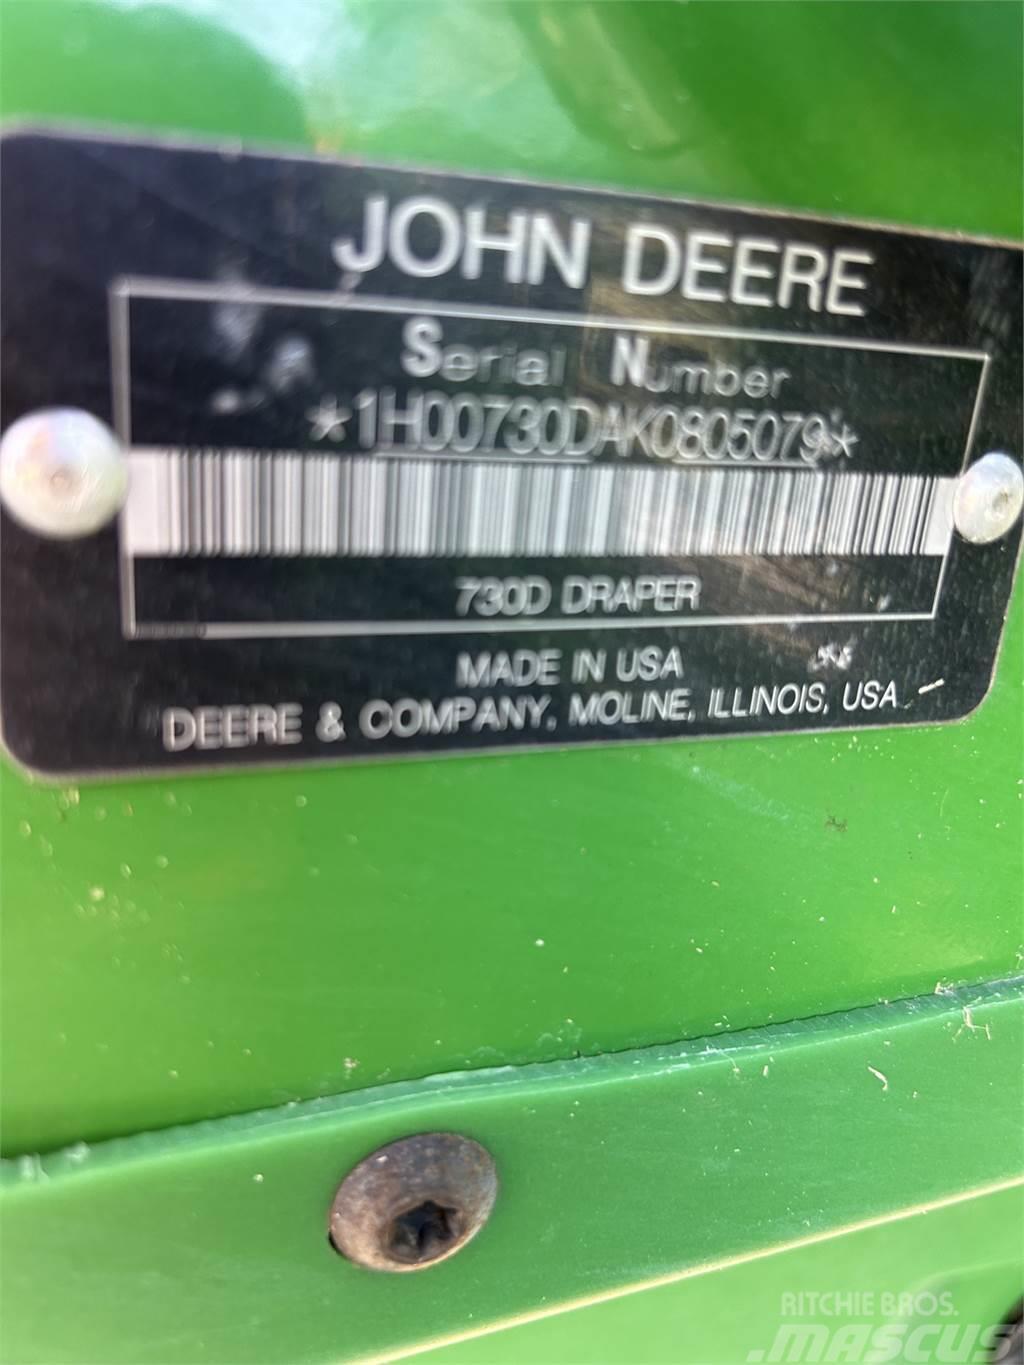 John Deere 730D Combine harvester accessories